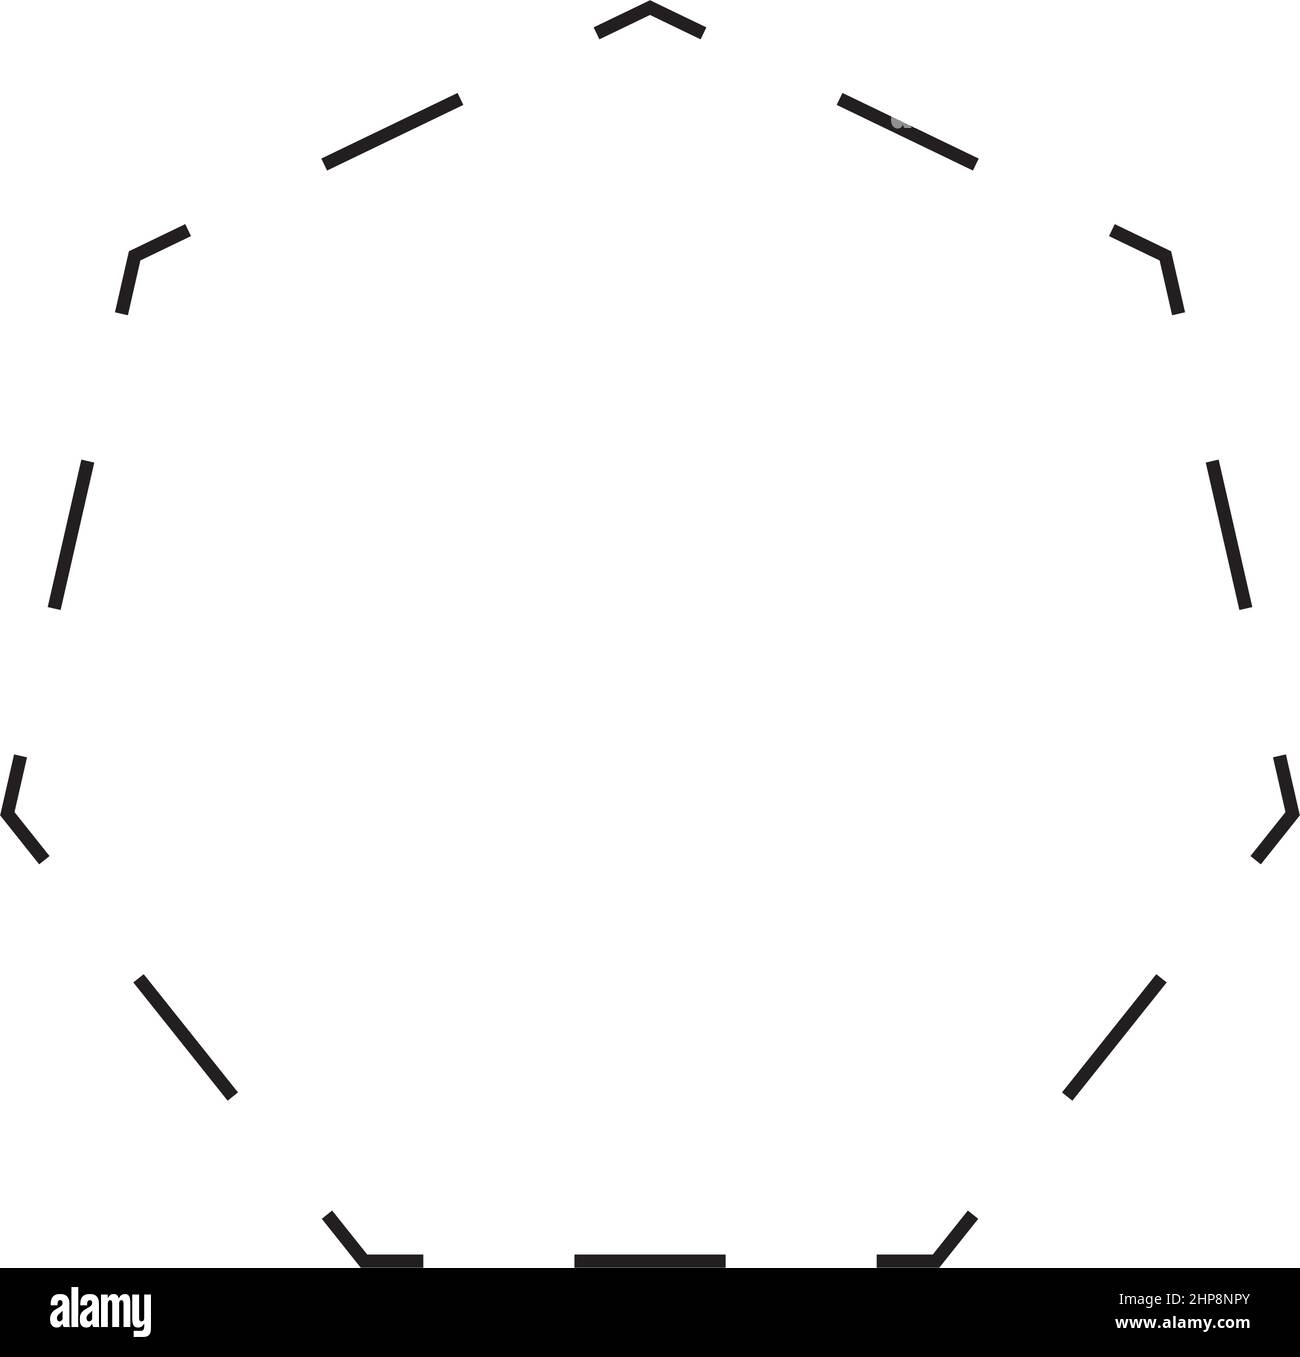 Vektor-Symbol mit gestrichelten Symbolen in der Form eines Heptagons für kreatives Grafikdesign-ui-Element in einer Piktogrammdarstellung Stock Vektor